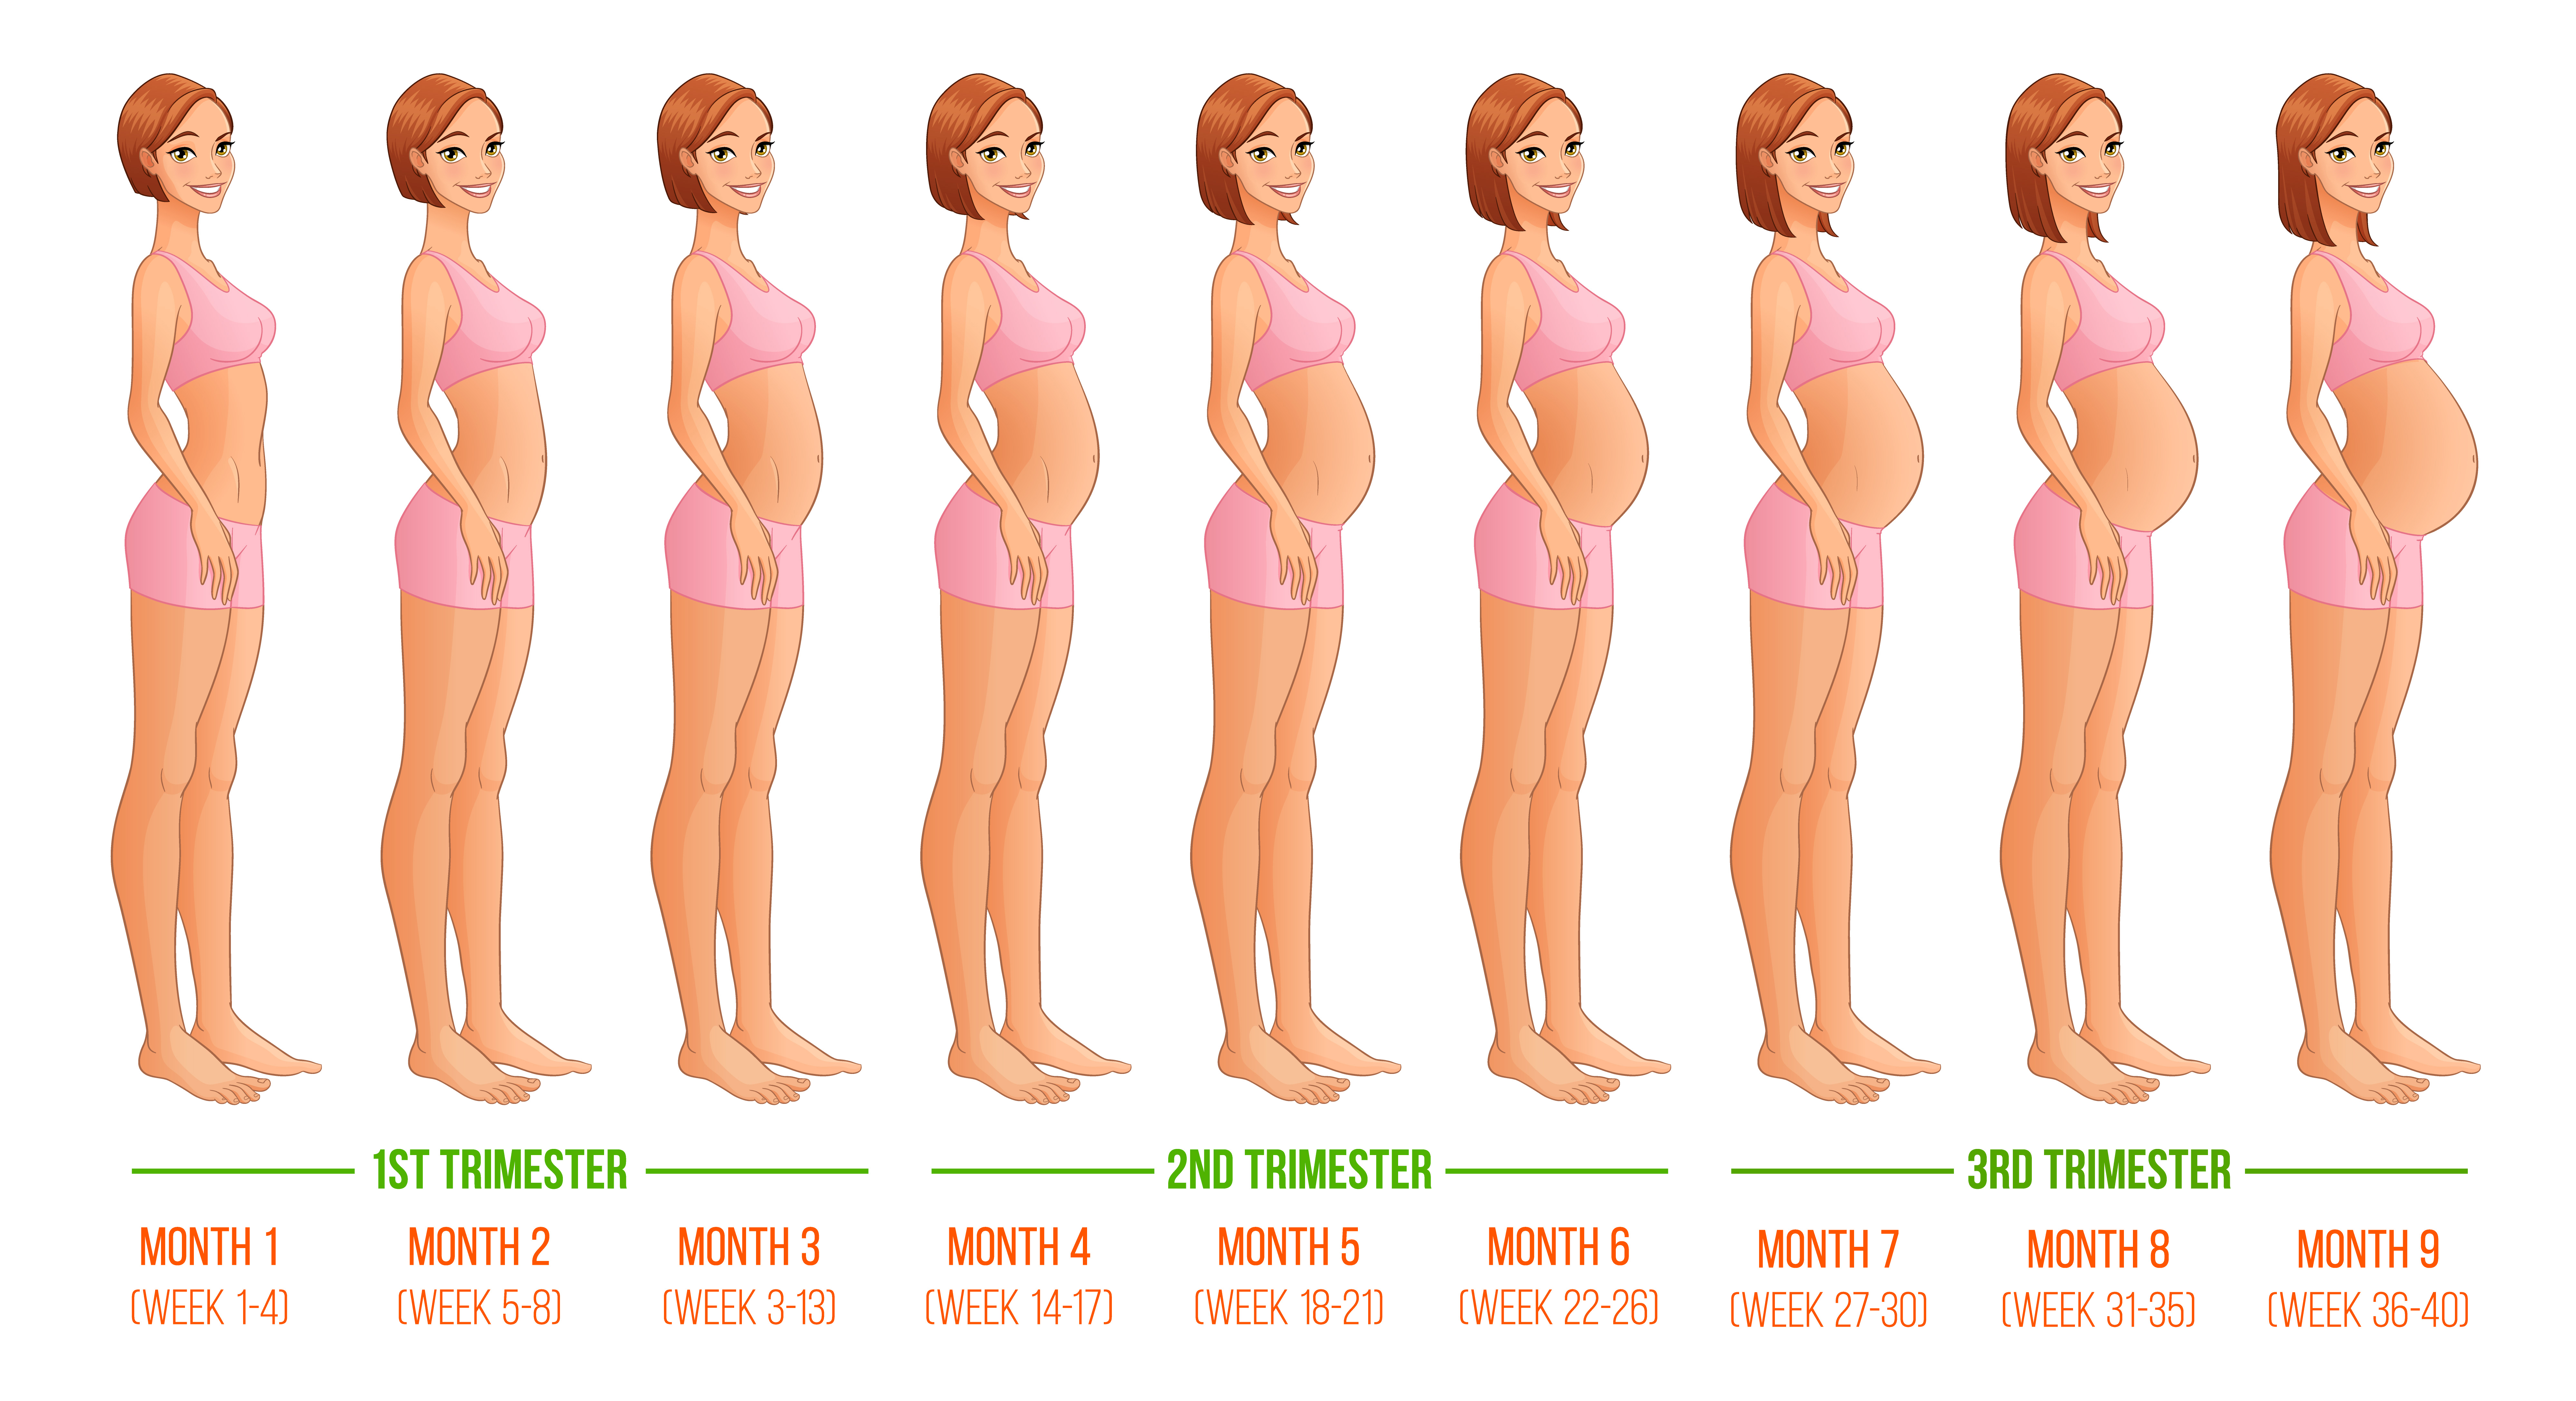 Pregnancy week by week. 3 Trimesters. 9 Months, 40 Weeks.